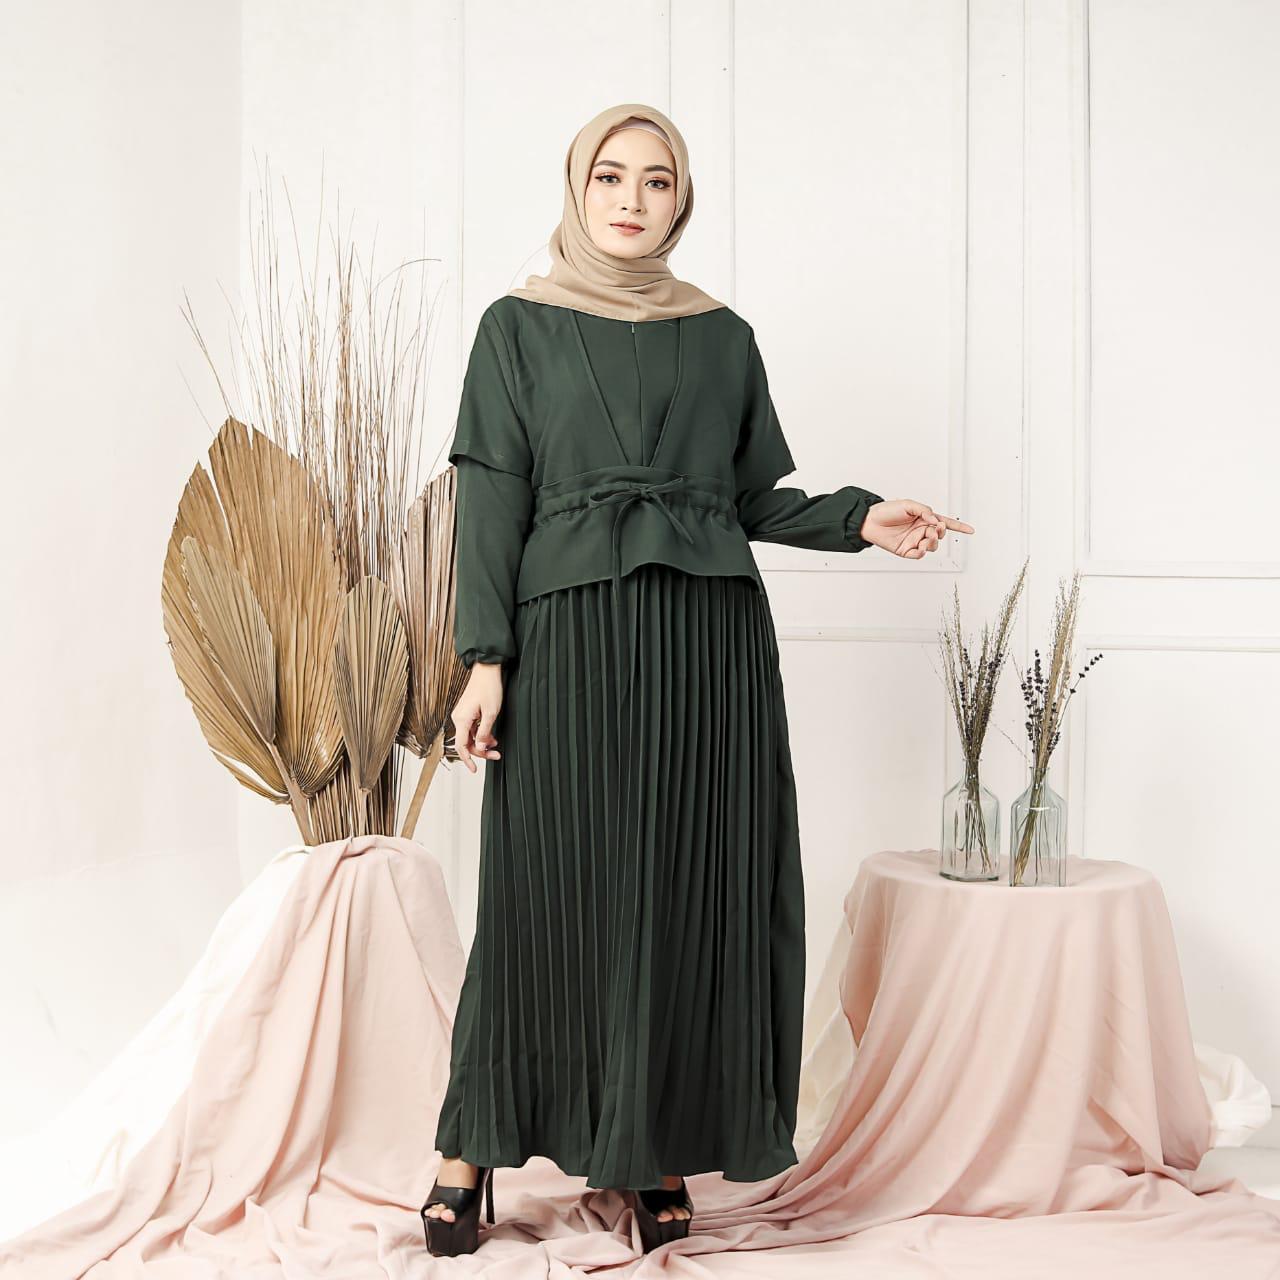 Baju Muslim Modern Gamis HIKMAT MAXY Wollycrepe Terusan Wanita Paling Laris Dan Trendy Baju Panjang Polos Muslim Dress Pesta Terbaru Maxi Muslimah Termurah Pakaian Modis Simple Casual Terbaru 2019